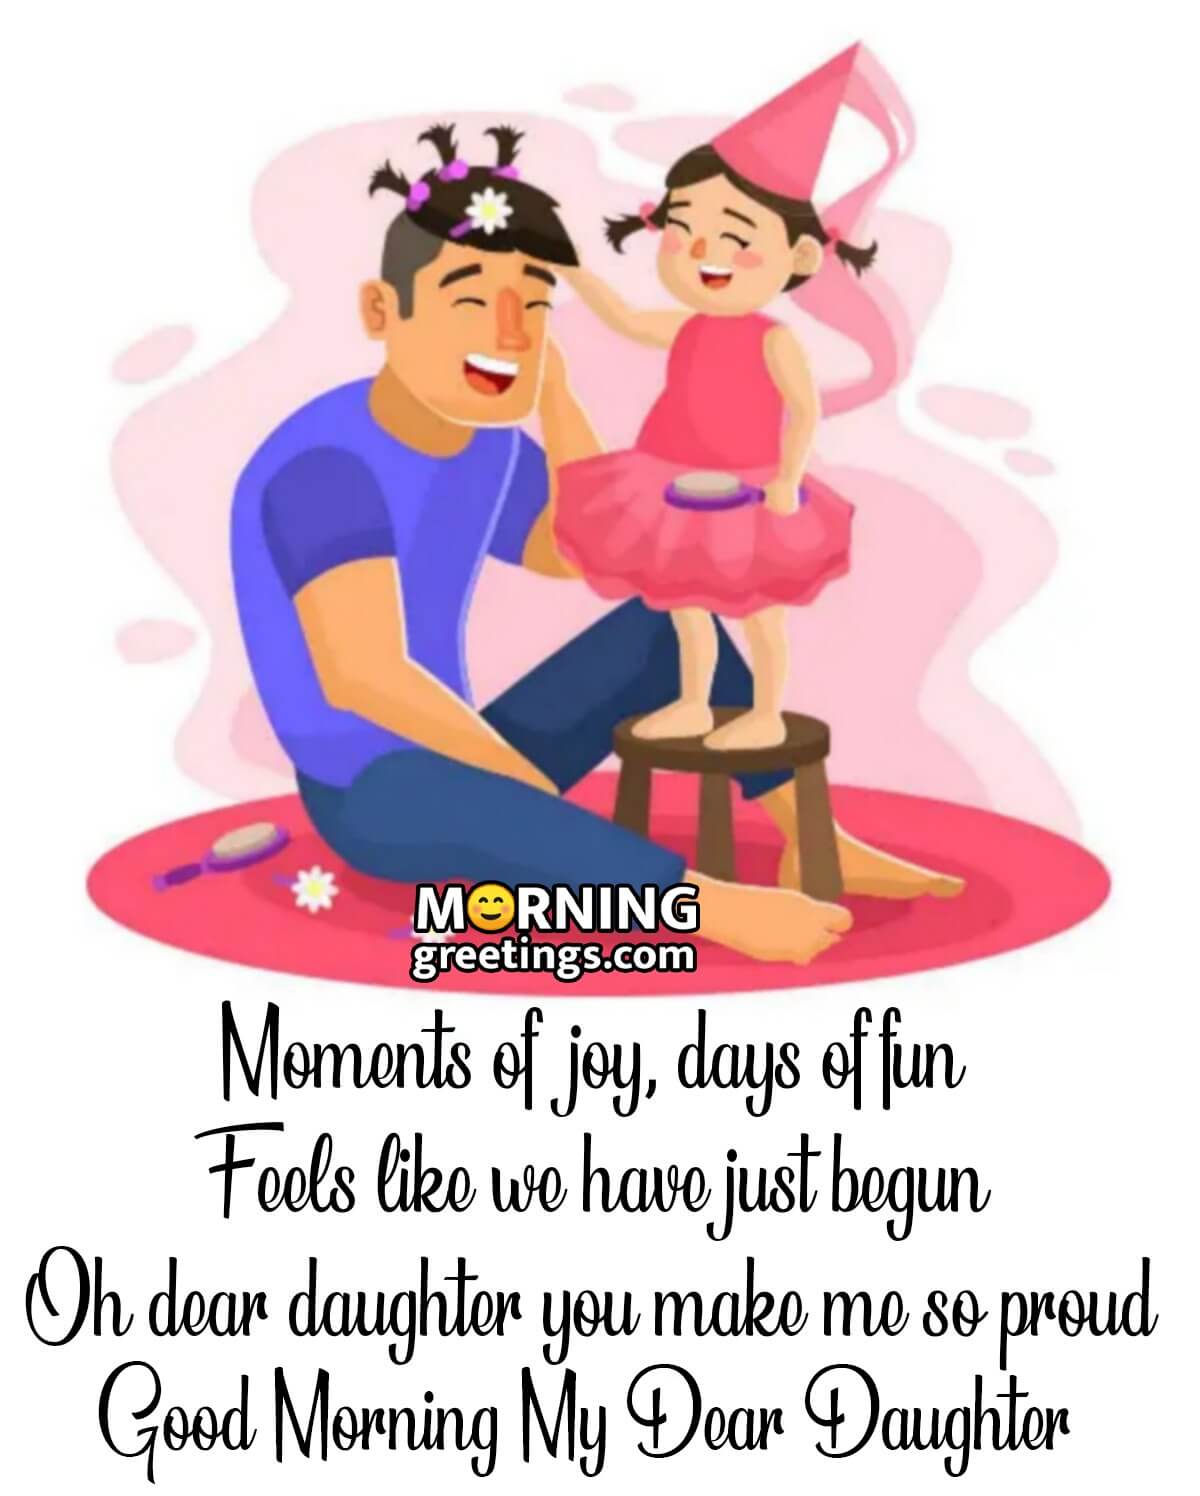 Good Morning My Dear Daughter